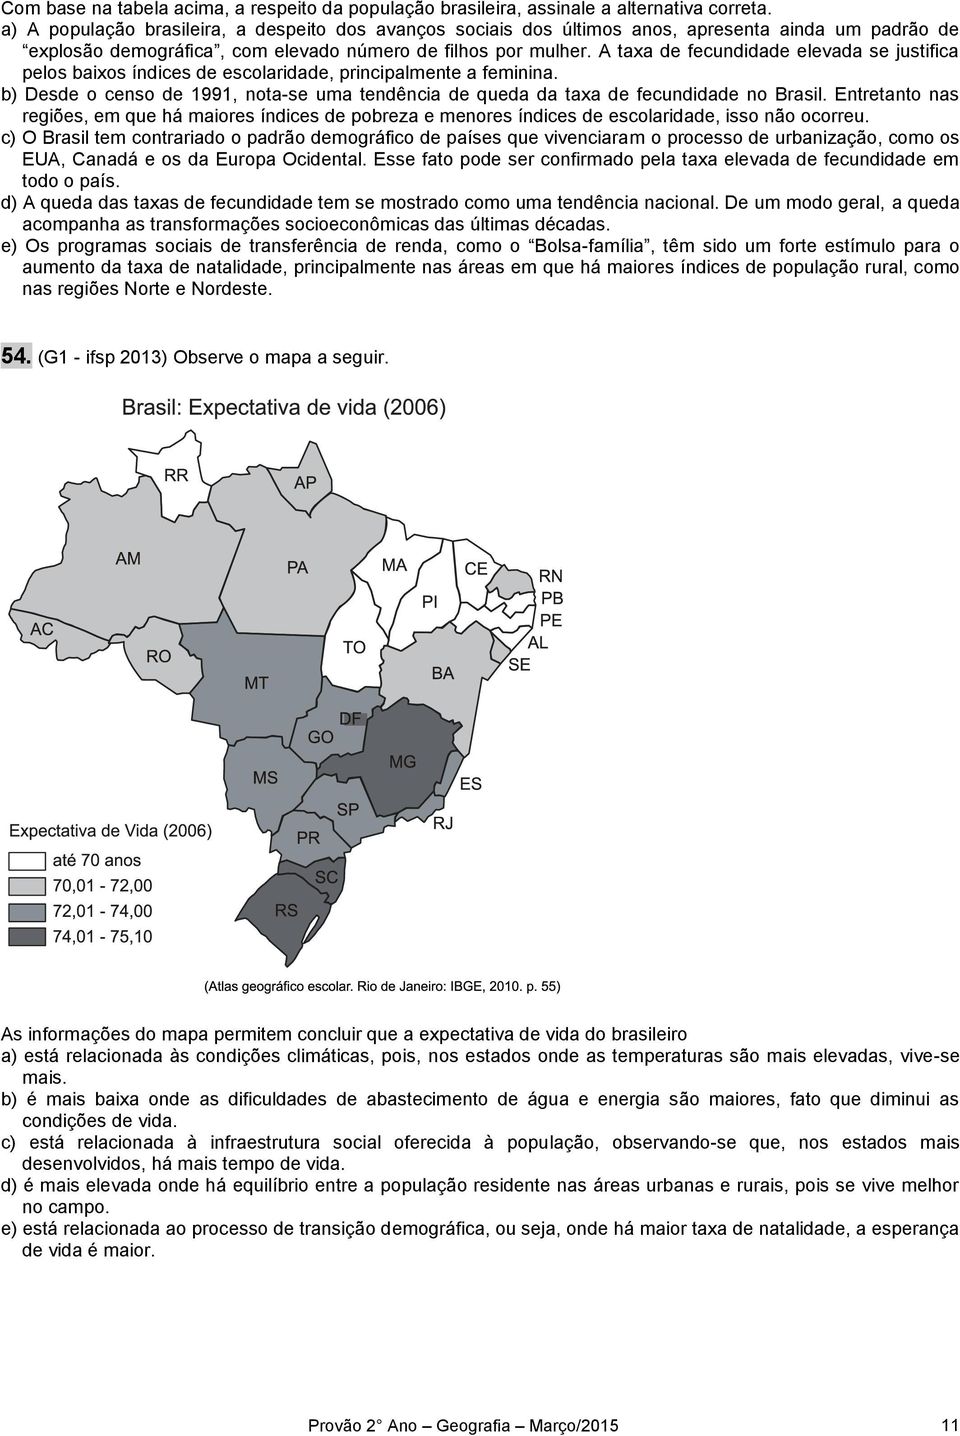 A taxa de fecundidade elevada se justifica pelos baixos índices de escolaridade, principalmente a feminina. b) Desde o censo de 1991, nota-se uma tendência de queda da taxa de fecundidade no Brasil.